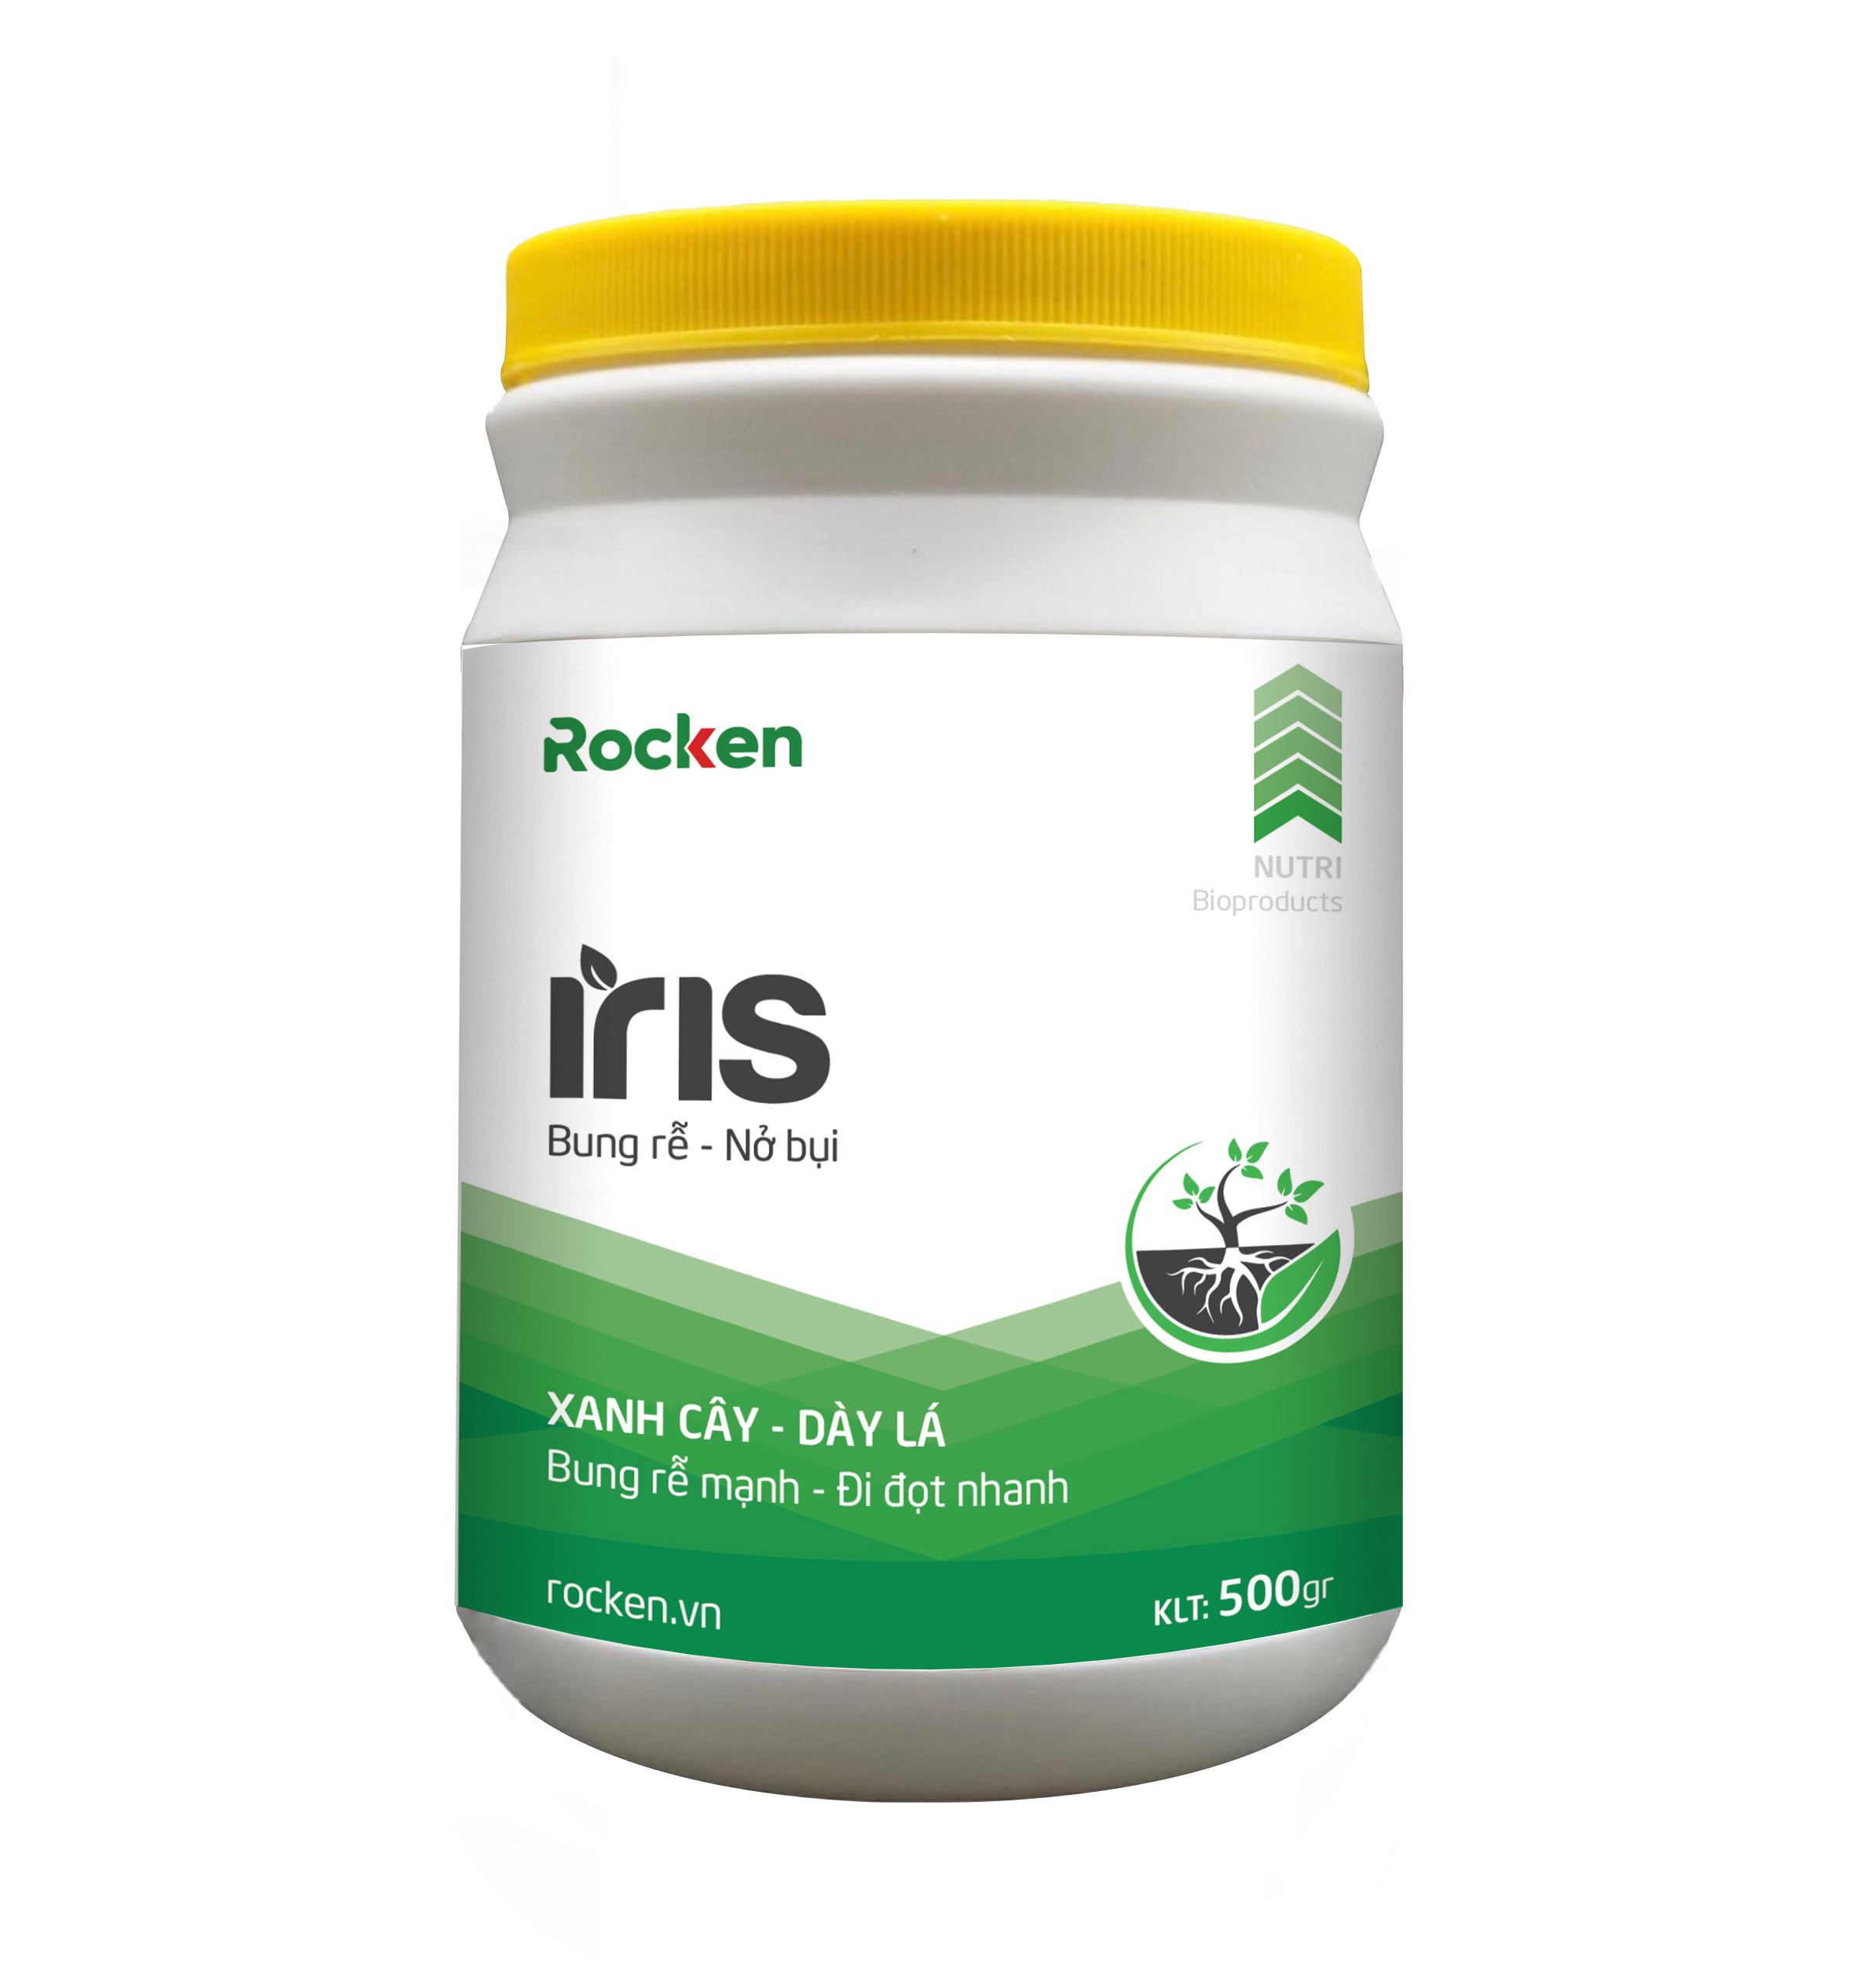 Rocken Iris (Bung Rễ Nở Bụi) – Thuốc Kích Xanh Cây, Dày Lá, Bung Rễ Mạnh, Đi Đọt Nhanh